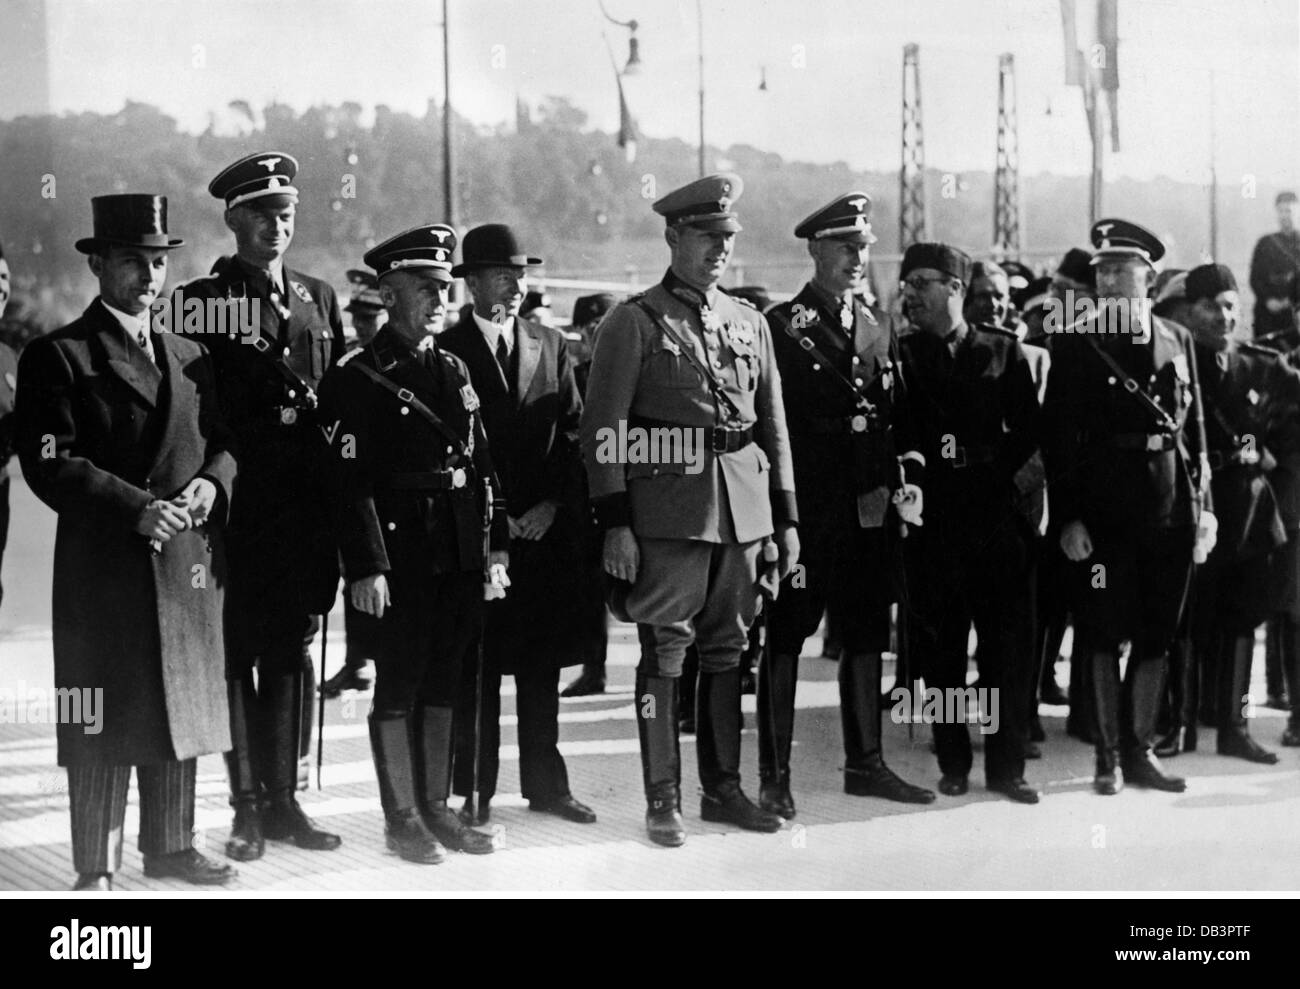 National-socialisme, organisations, police, délégation de la police allemande en Italie, 20.10.1936, droits additionnels-Clearences-non disponible Banque D'Images